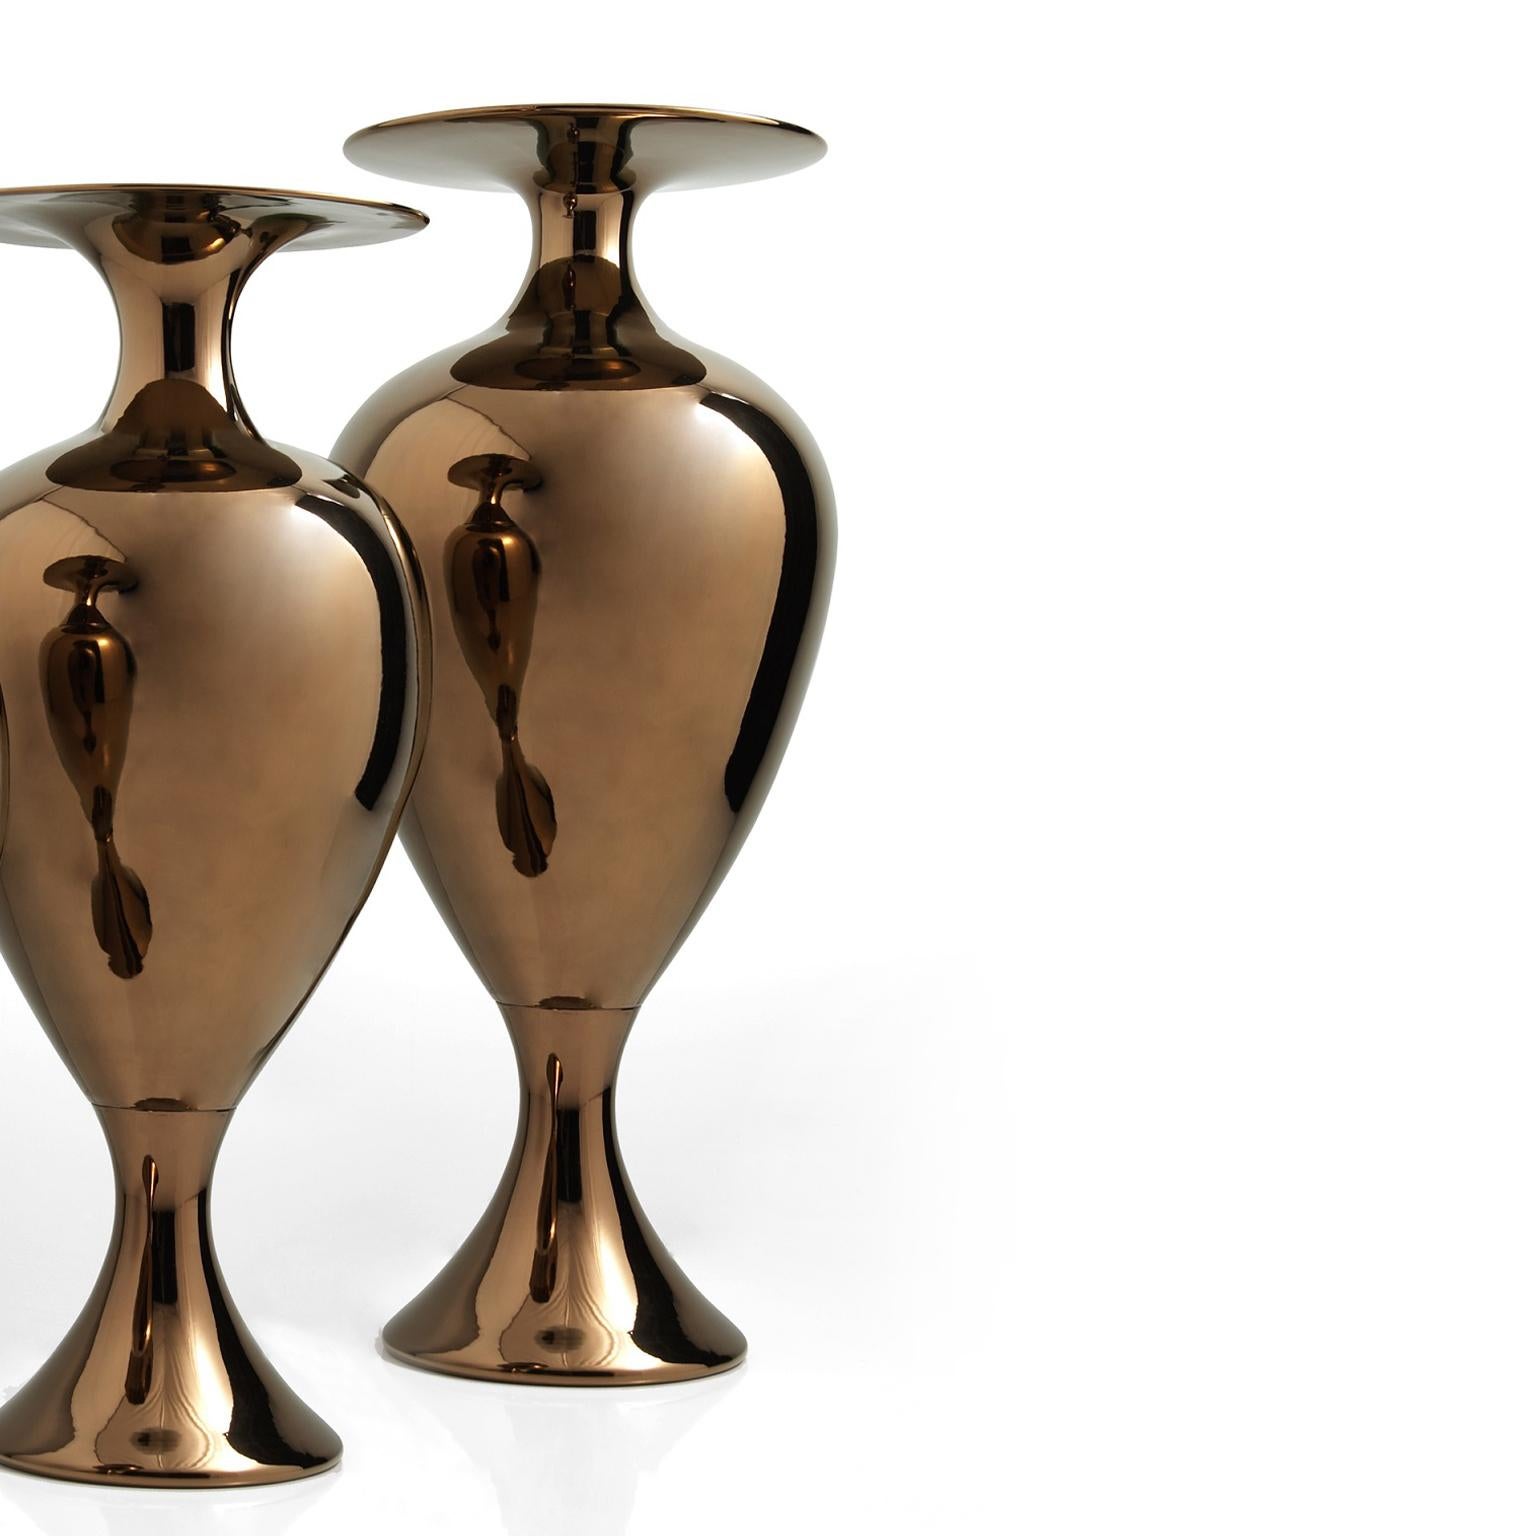 CAMILLE - Ceramic vase handcrafted in bronze

code VS006
measures: H. 120.0 cm., Dm. 45.0 cm.